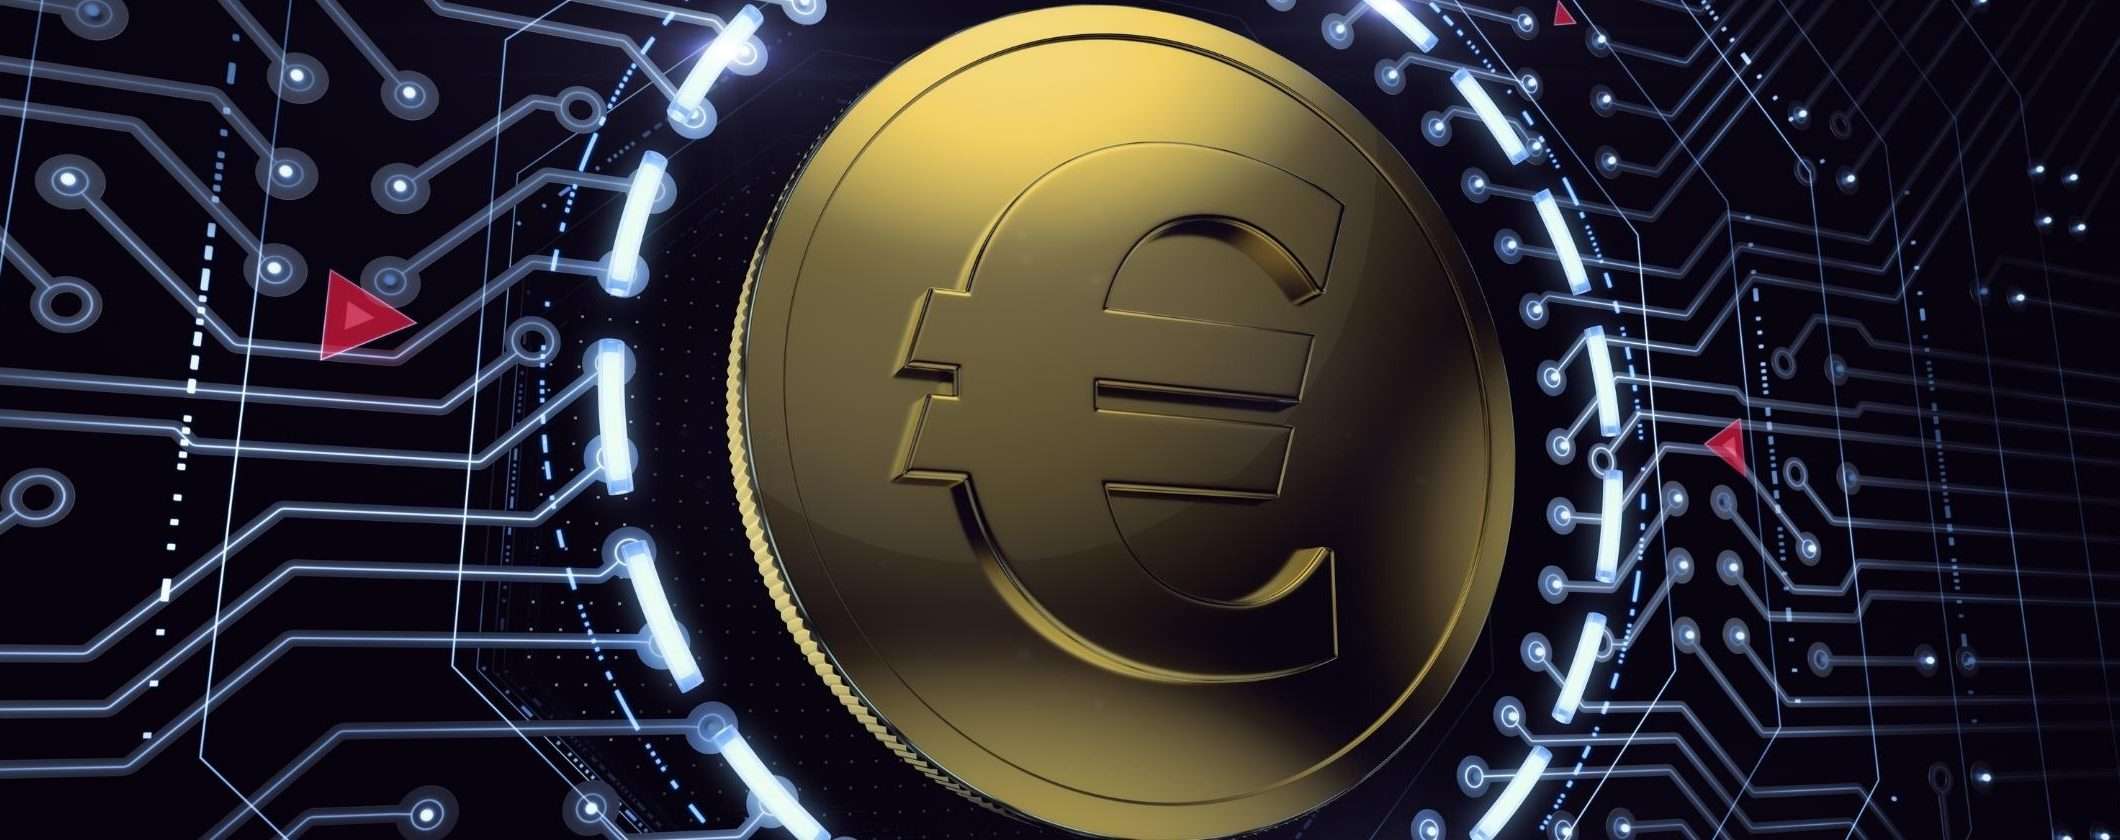 L'Euro Digitale ridurrà i rischi del sistema finanziario